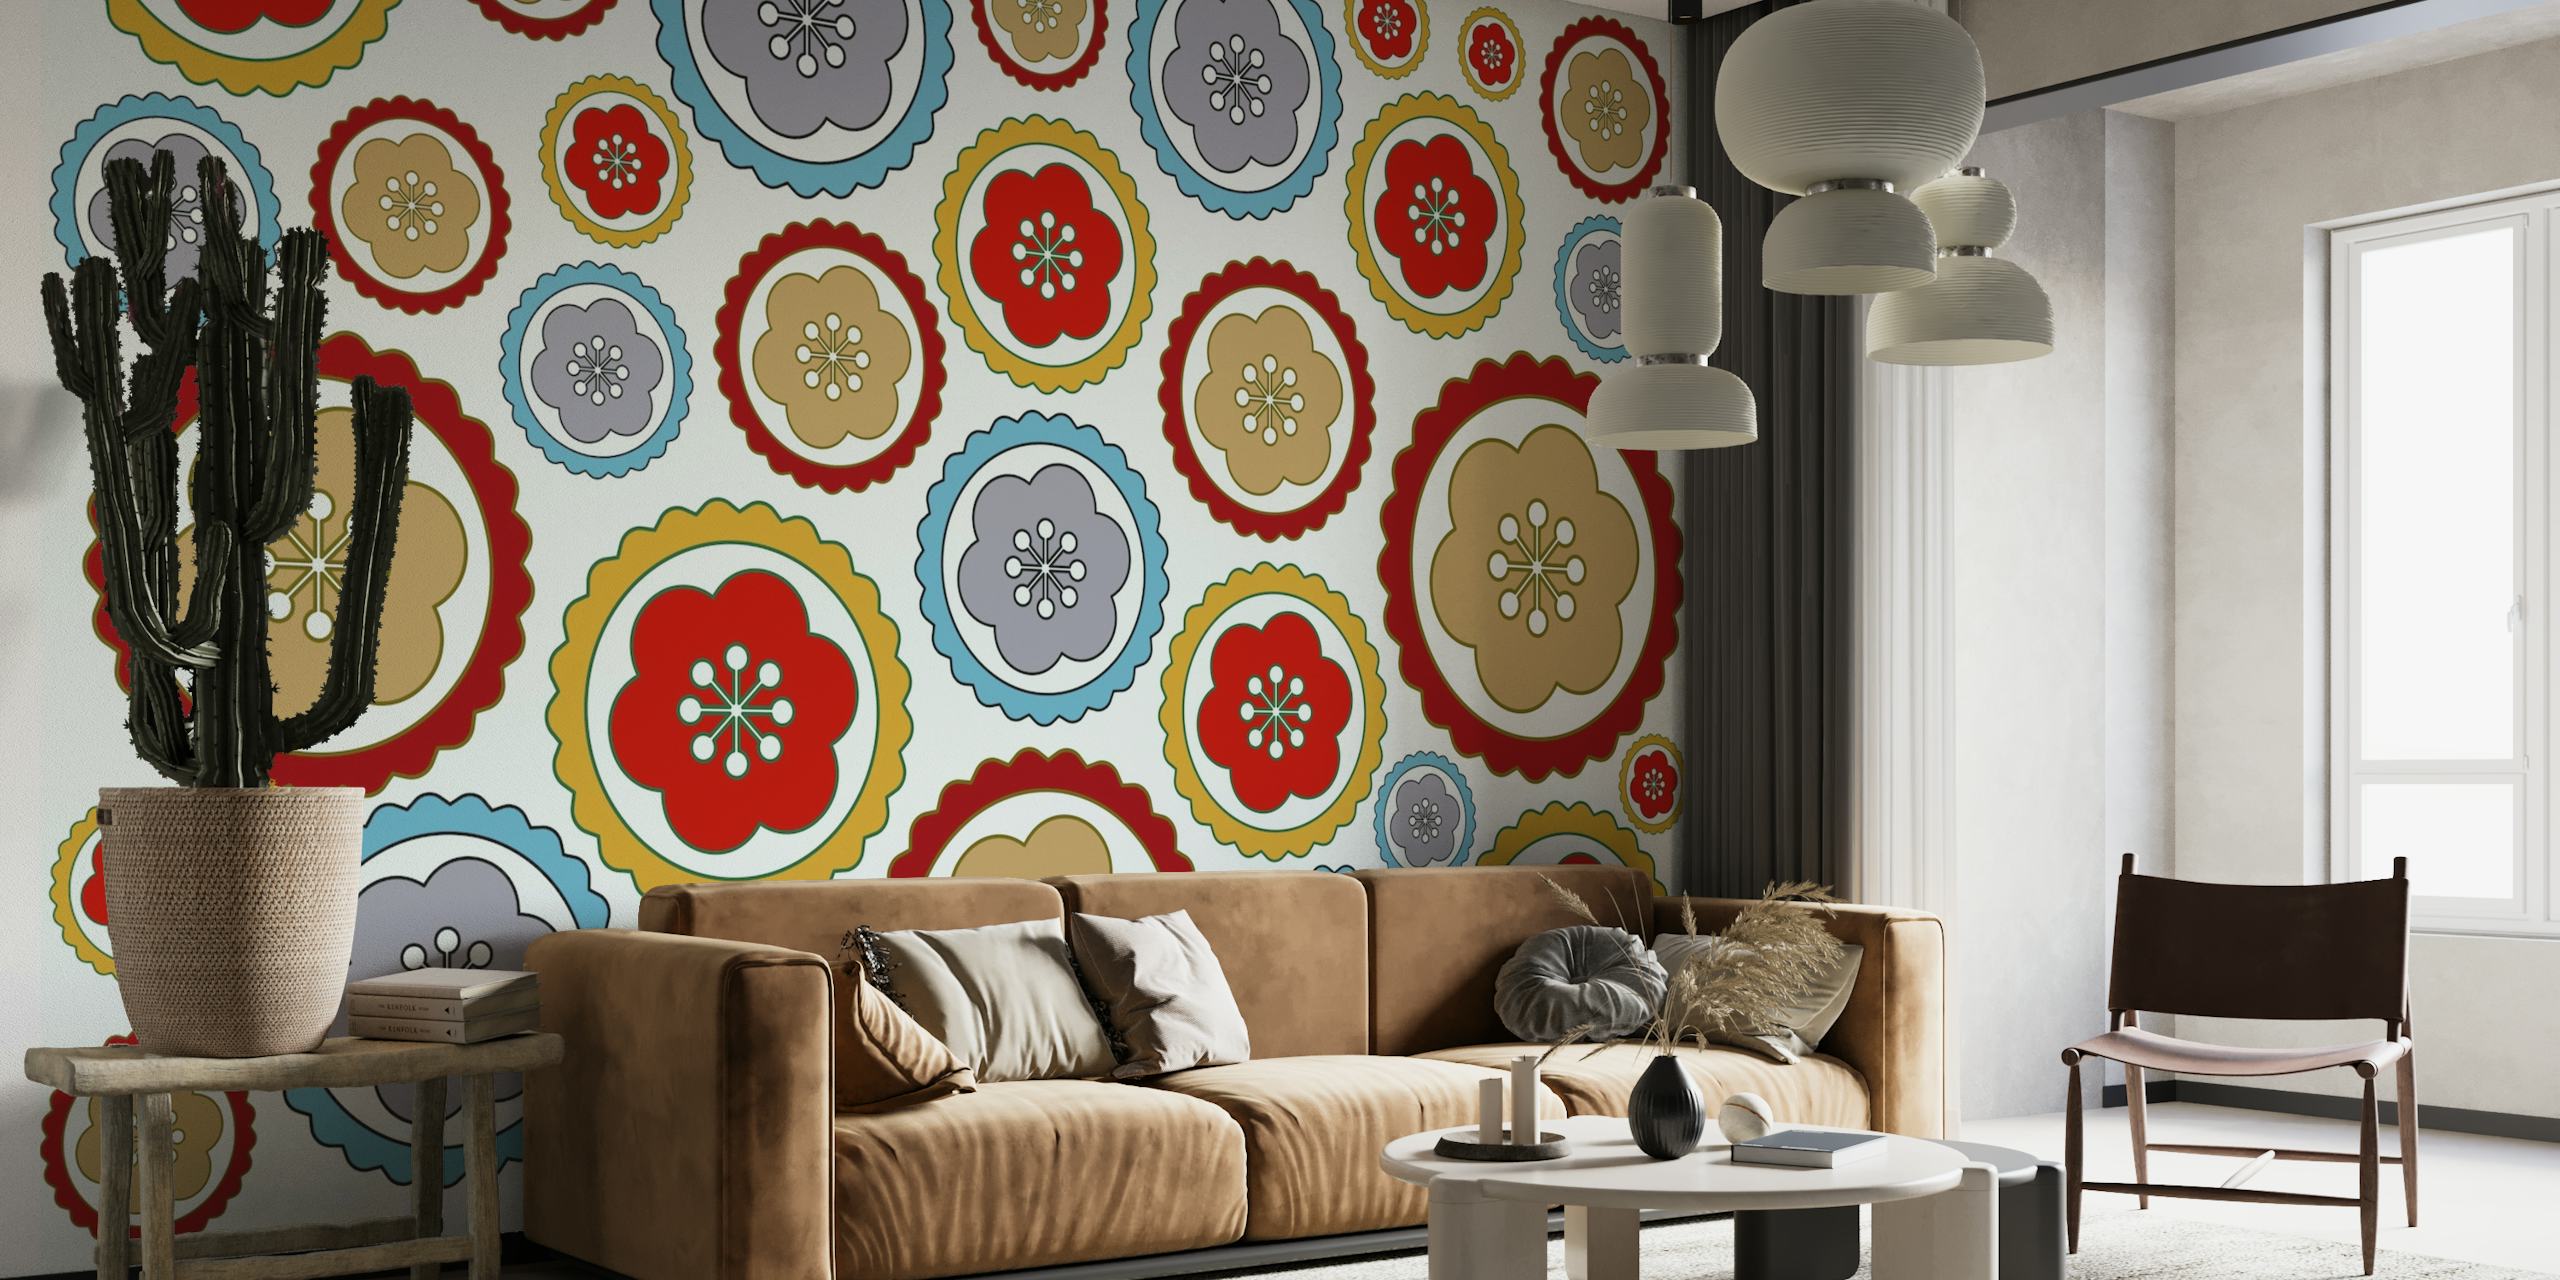 Fotomural vinílico de parede colorido com padrão de margarida em estilo retro para um tema de decoração vintage